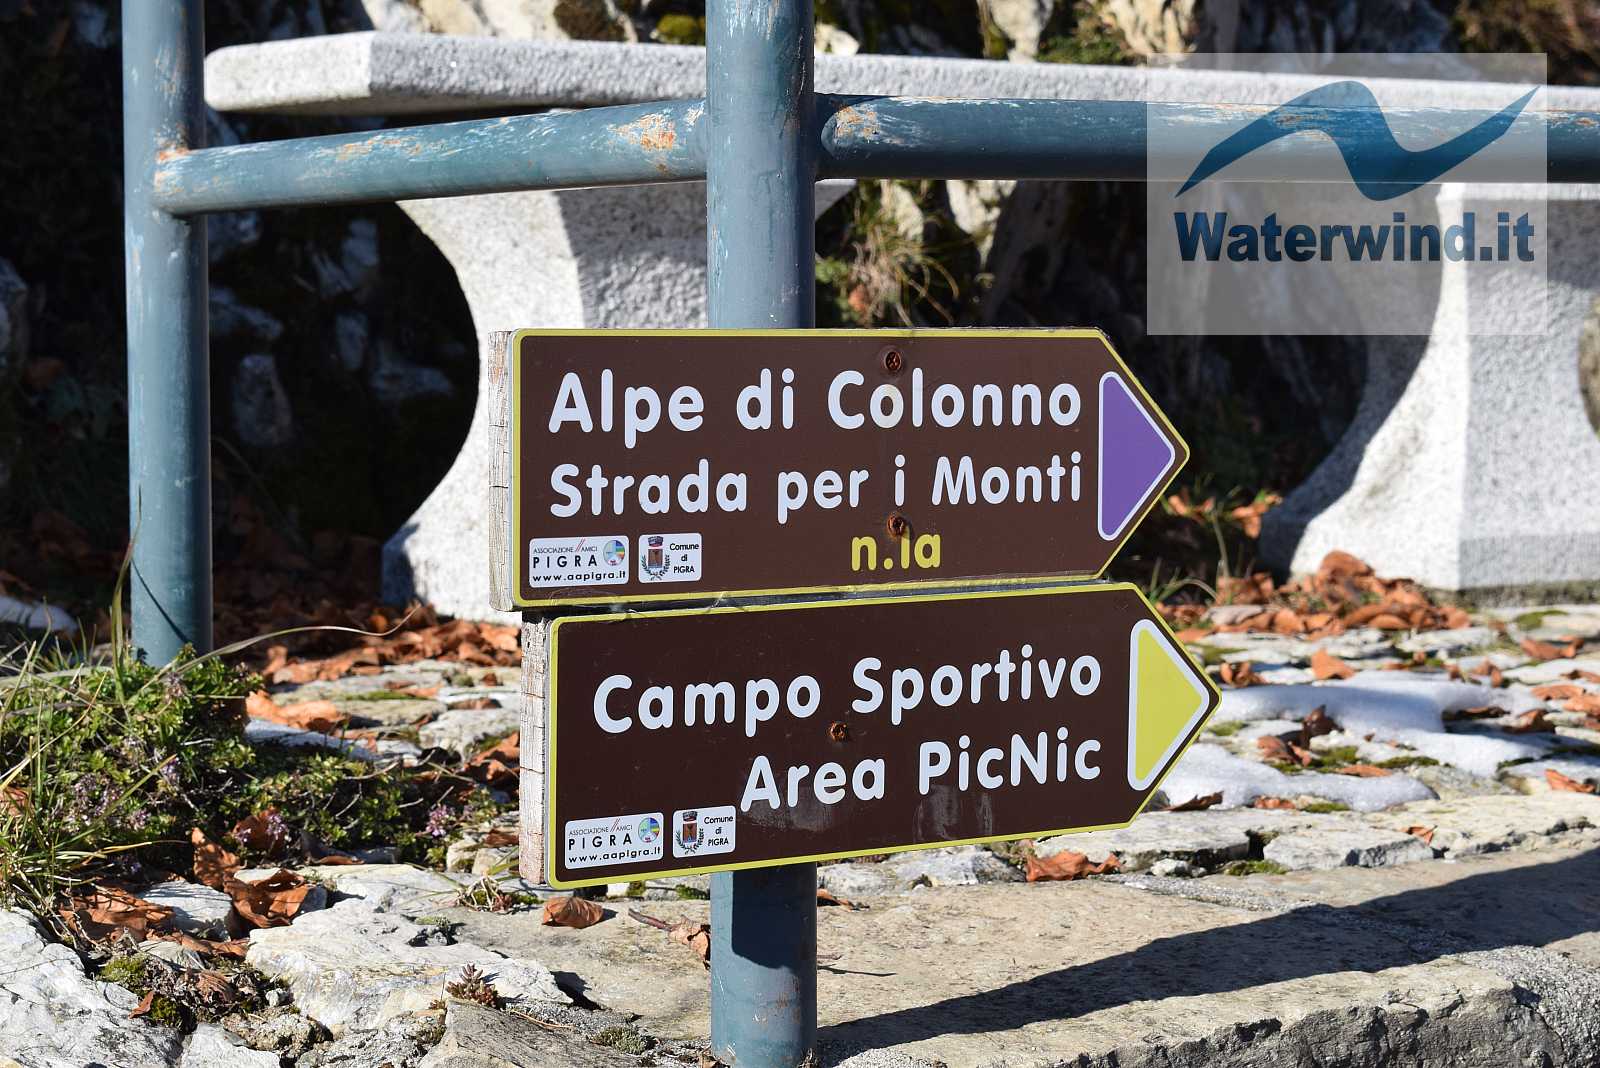 Pigra - Alpe di Colonno